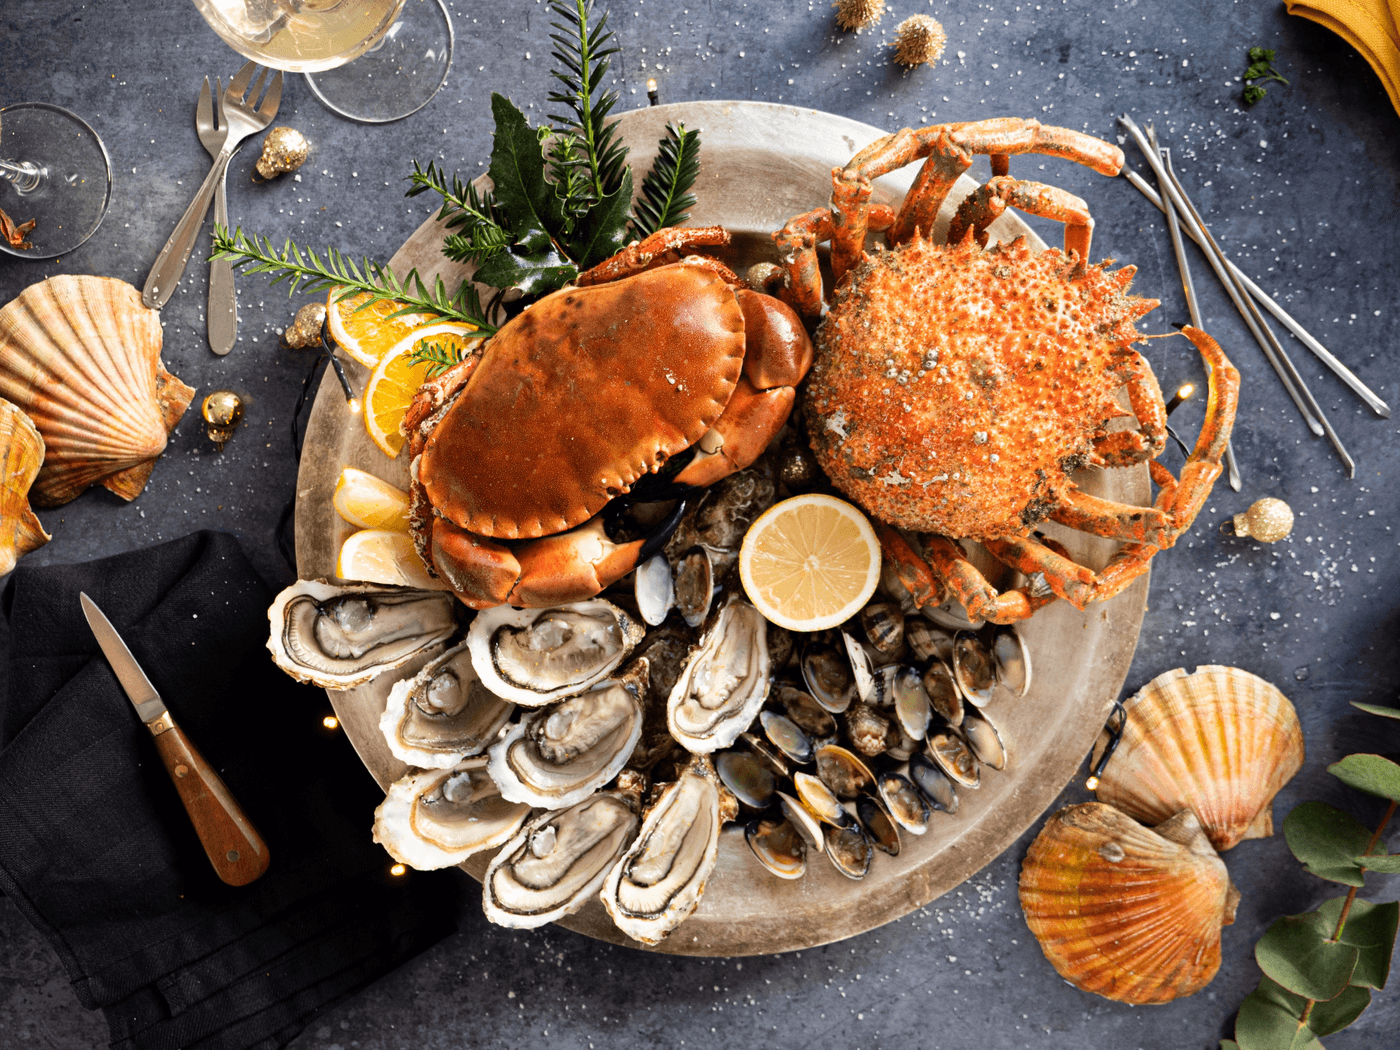 Plateau de fruits mer Poiscaille composé de produits sauvages, français et pêchés durablement.